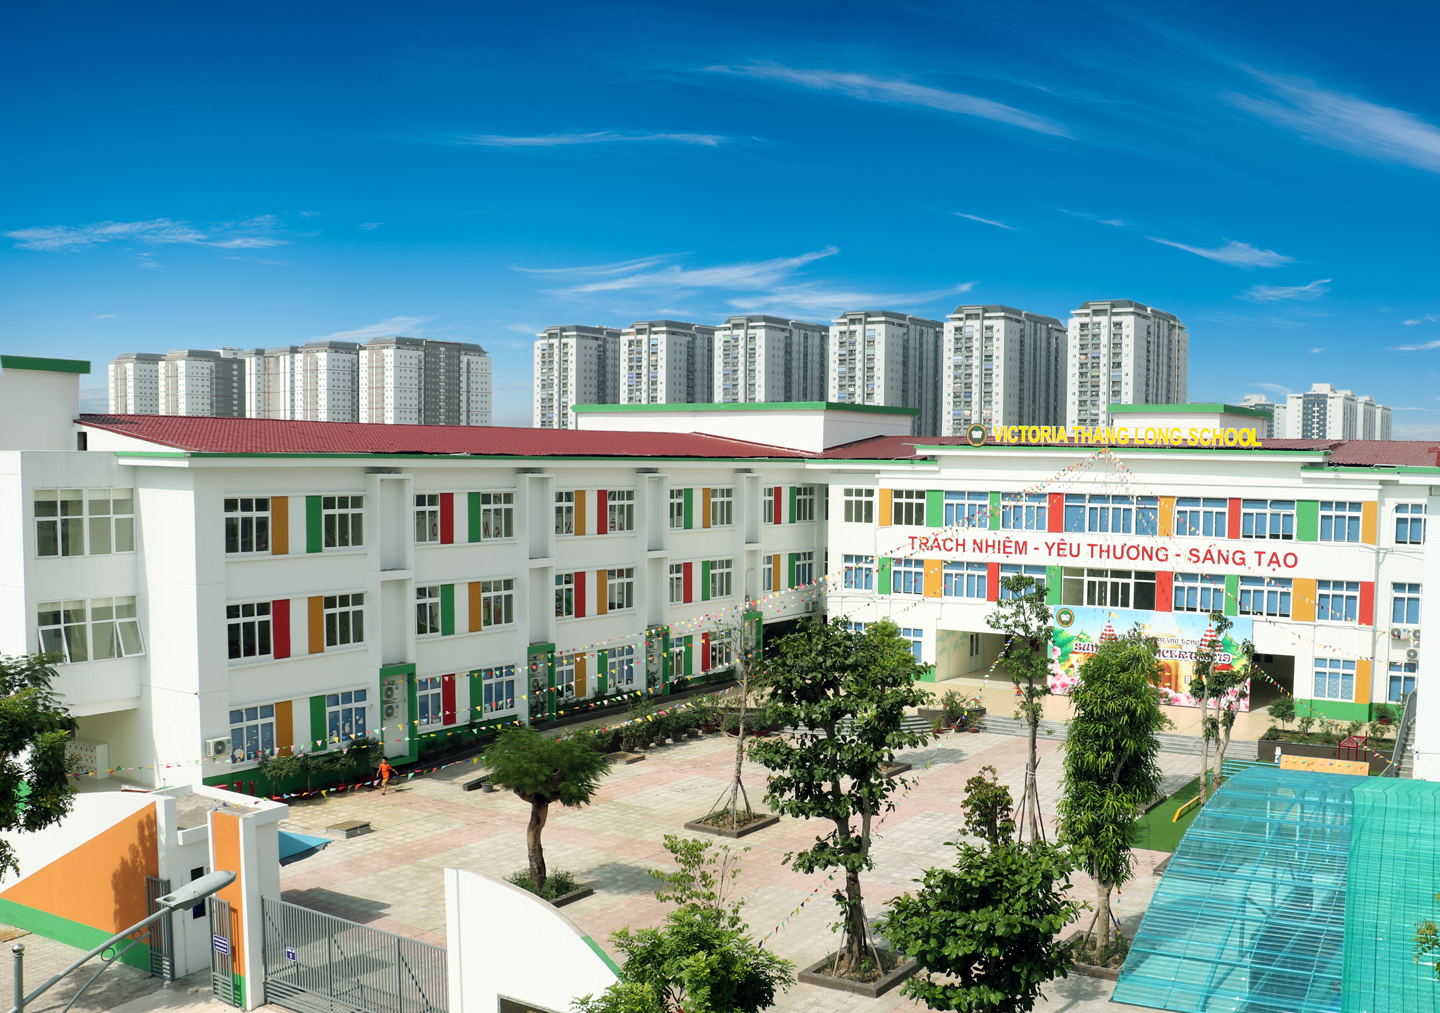 Thông báo về địa điểm tổ chức hoạt động giáo dục của Trường TH & THCS Victoria Thăng Long